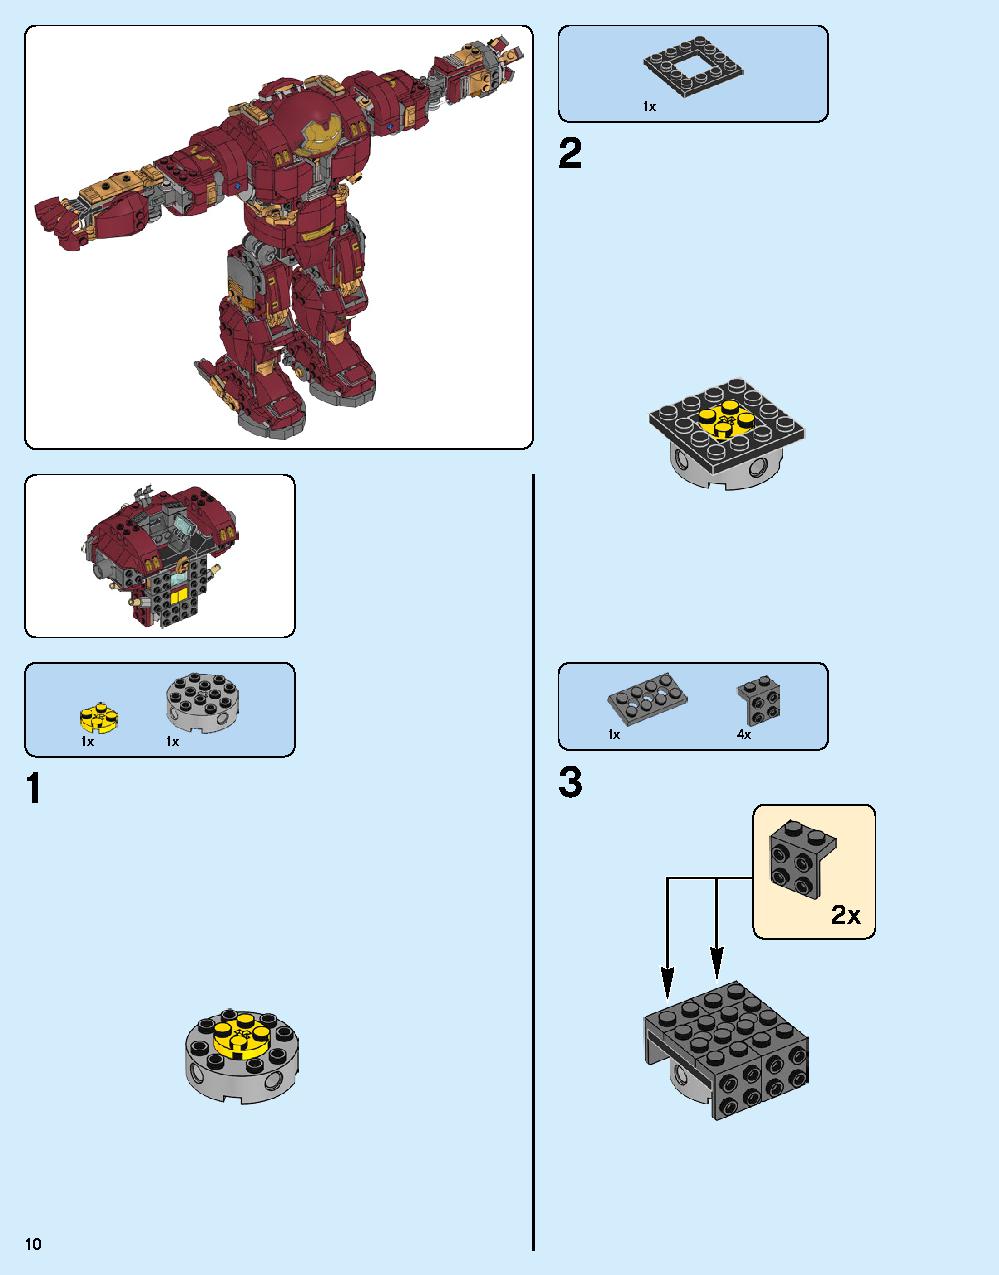 ハルクバスター：ウルトロン・エディション 76105 レゴの商品情報 レゴの説明書・組立方法 10 page